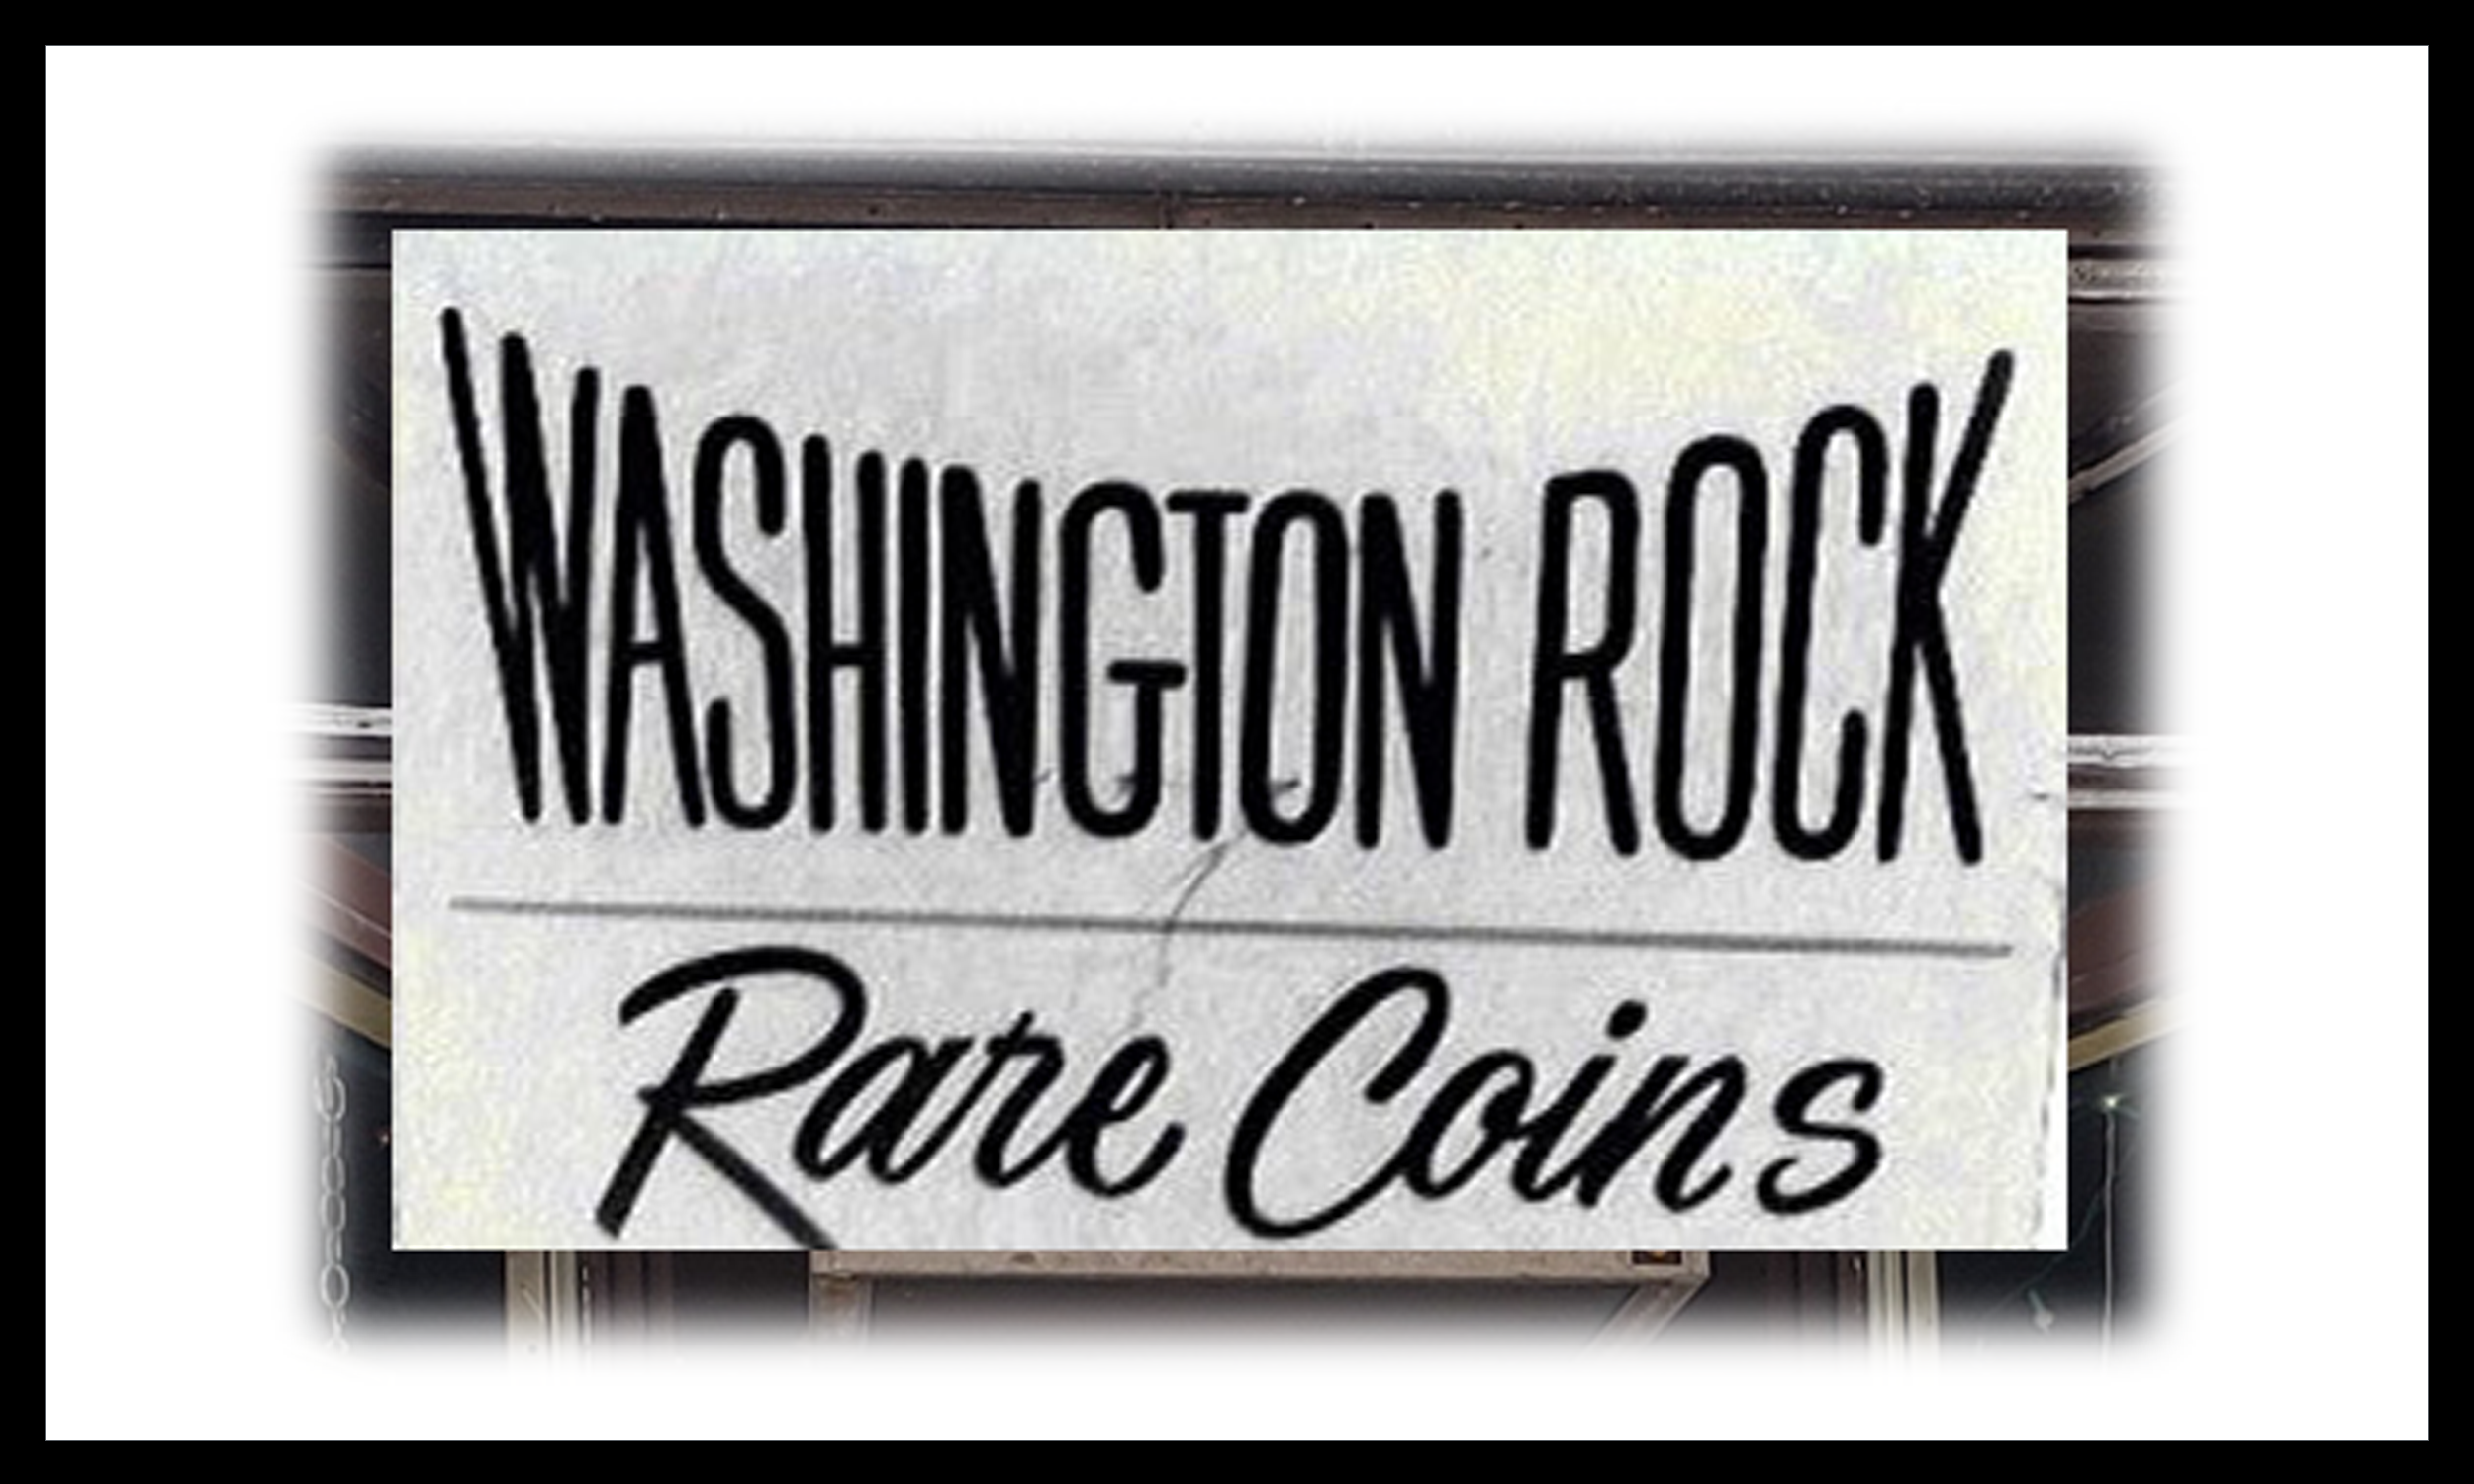 Washington Rock Rare Coins